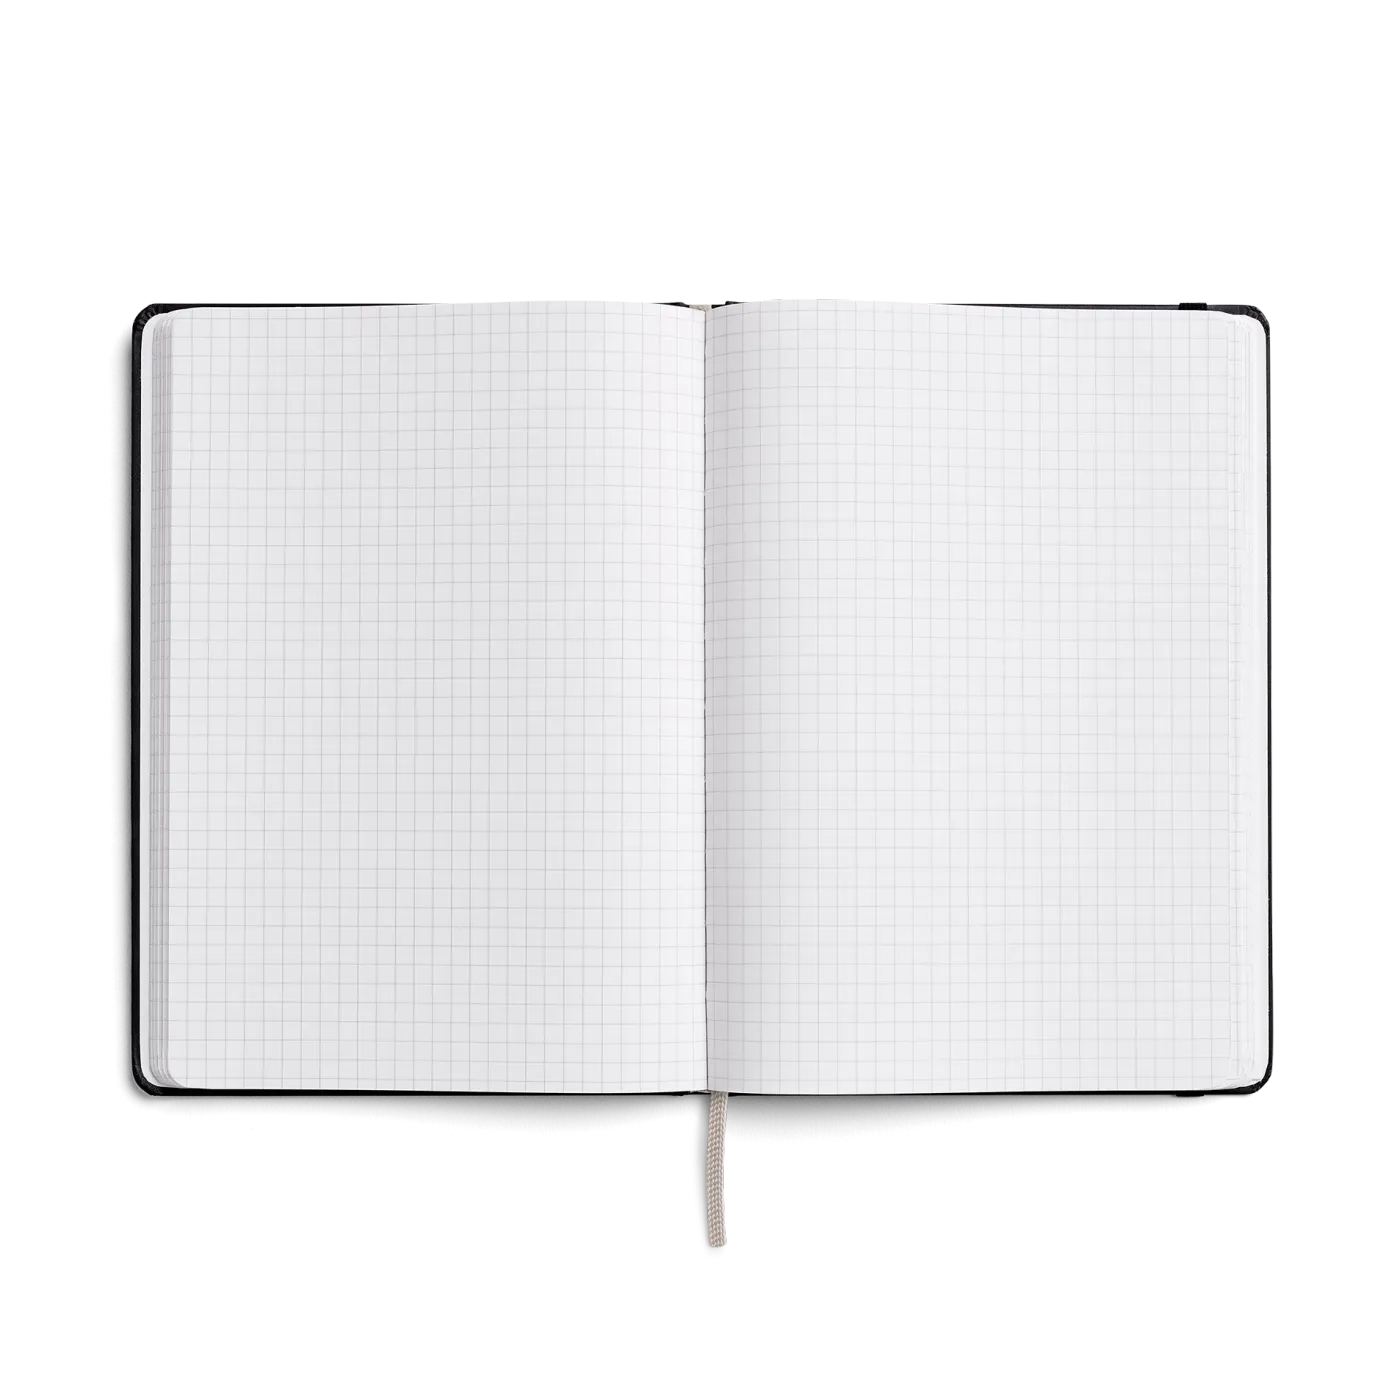 Karst Notitieboek A5 Hardcover - Navy (Grid)